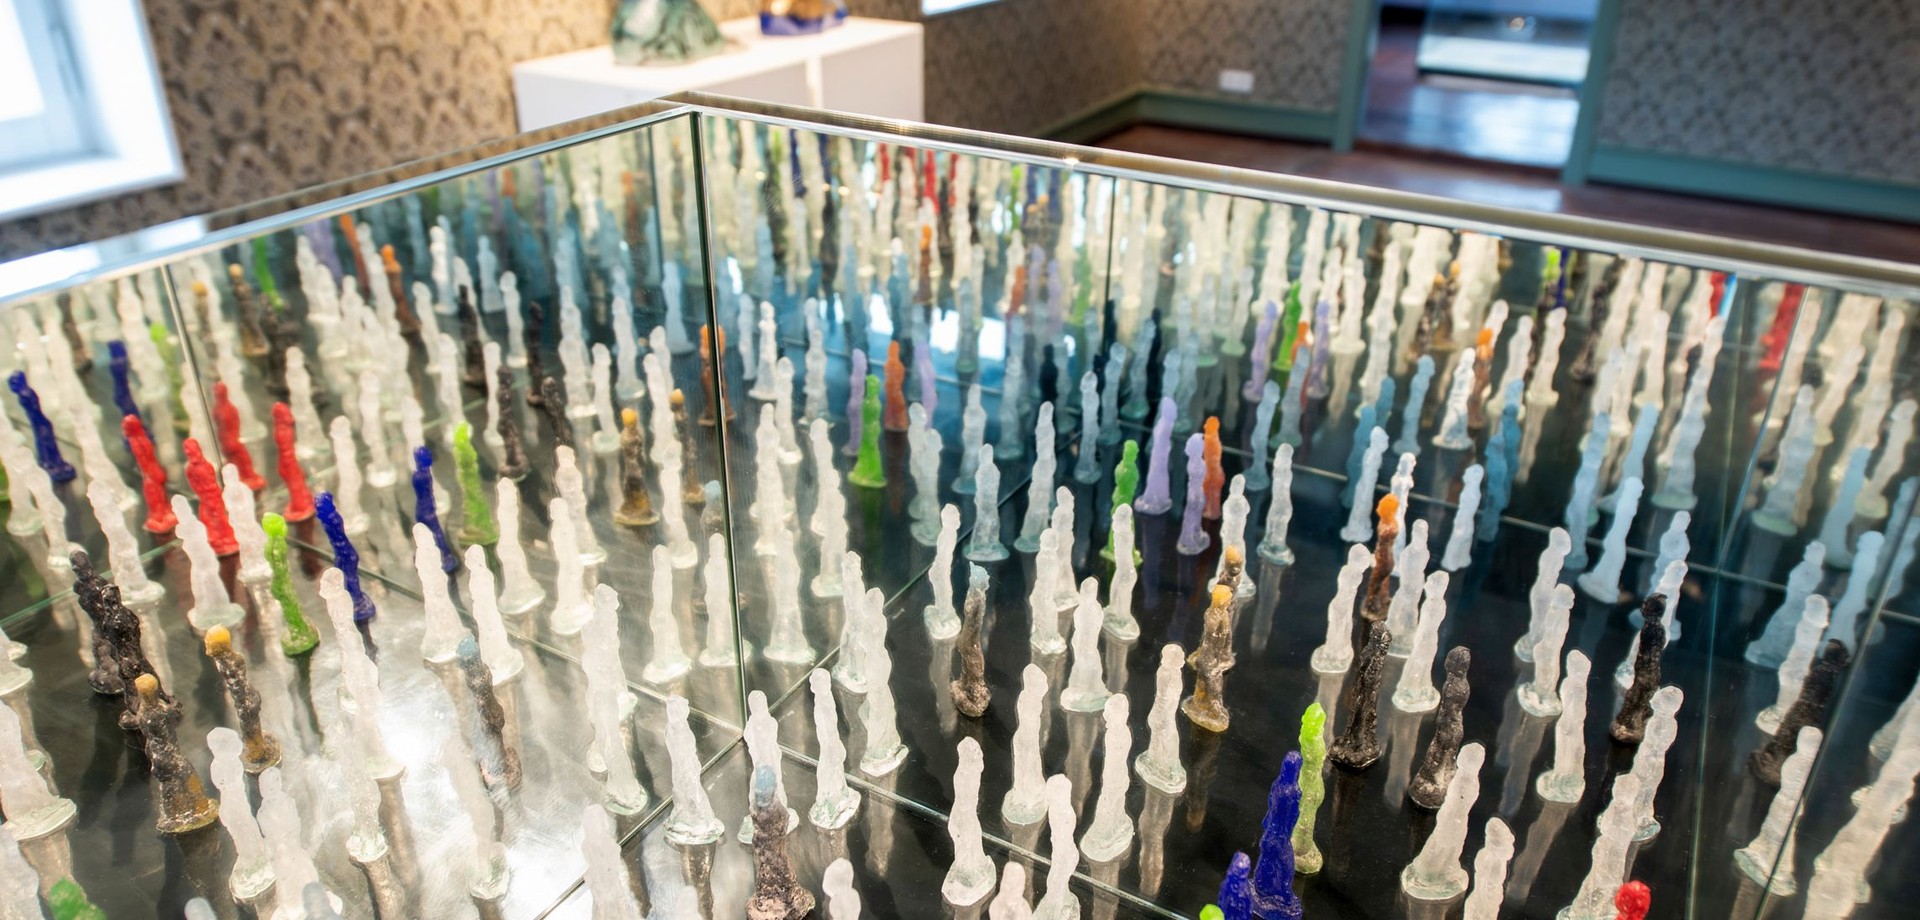 Installation mit vielen kleinen Glasskulpturen in einer verspiegelten Tischvitrine. Arbeit von Korbinian Stöckle mit dem Titel "Zwischenwelt".